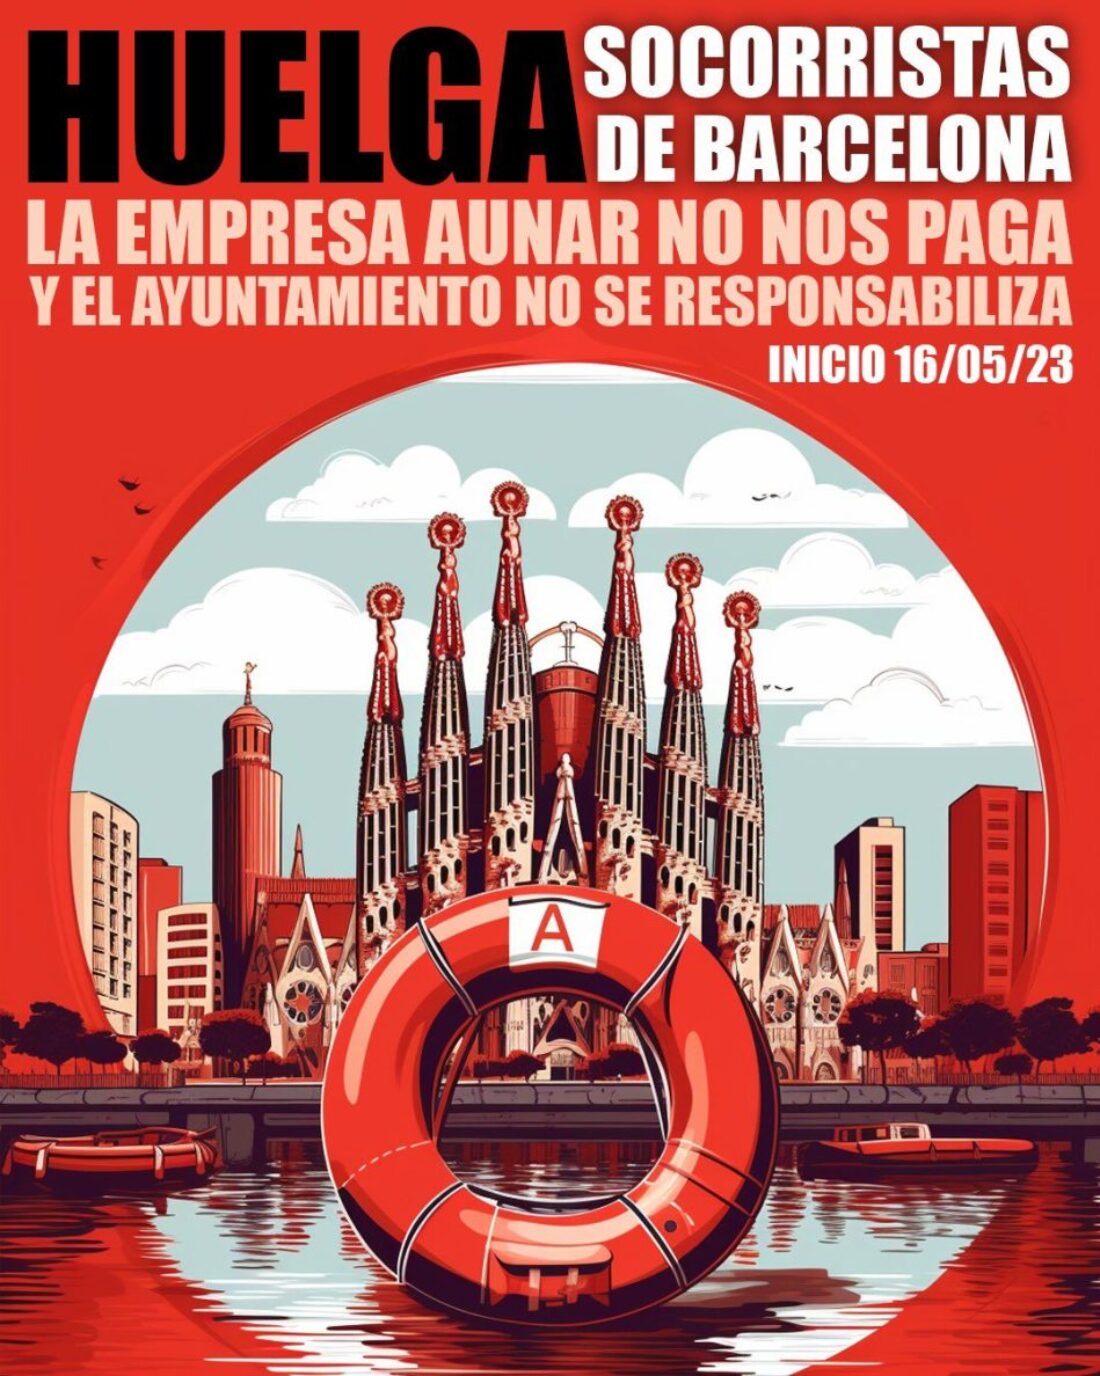 Huelga indefinida Socorristas Playas Barcelona a partir del 16 de mayo